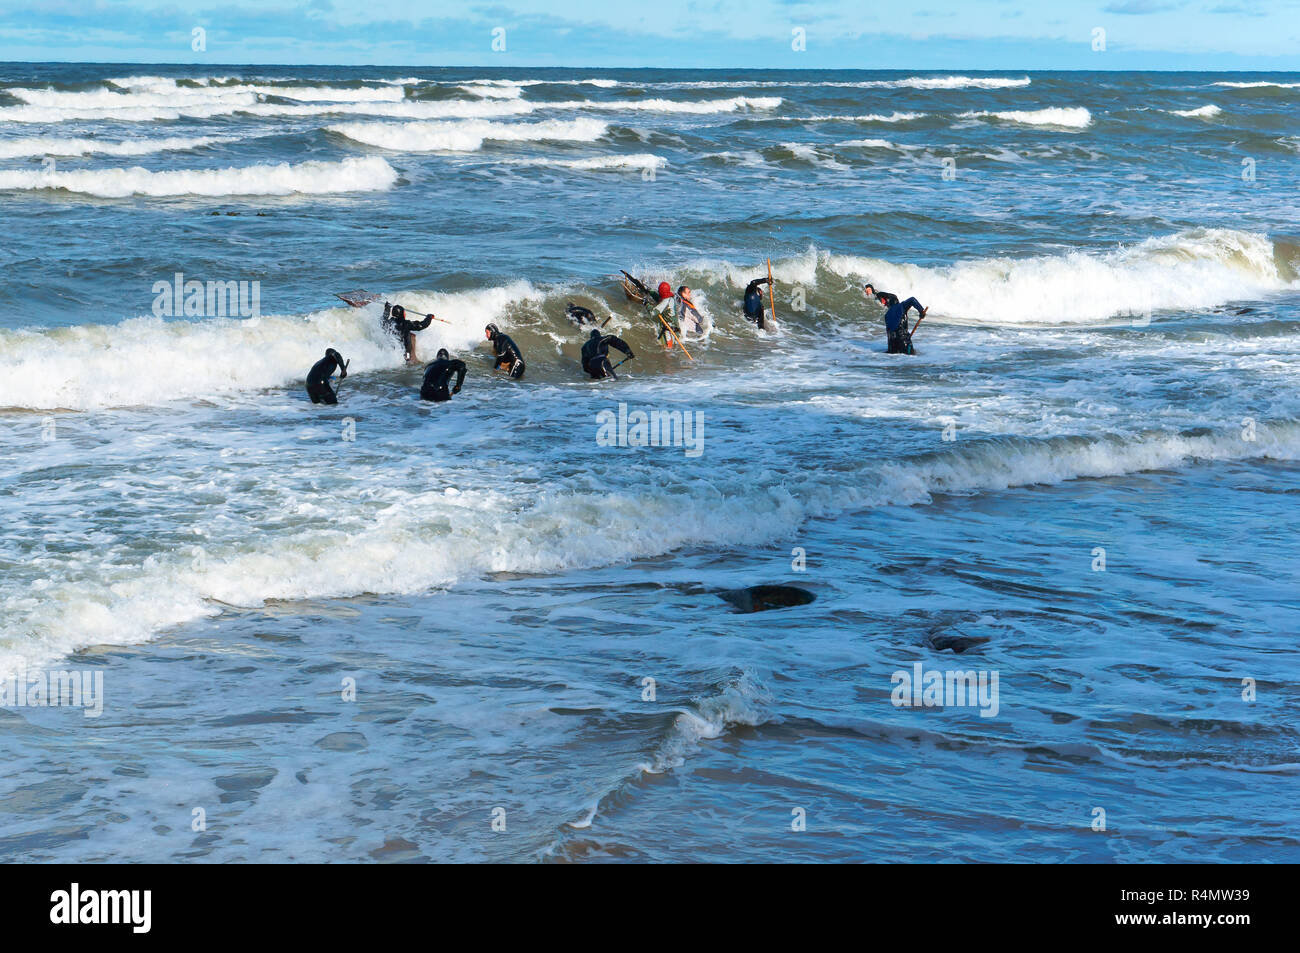 Ottobre 28, 2018, il Mar Baltico, l'oblast di Kaliningrad, Russia, la pesca di ambra, persone cattura le onde color ambra Foto Stock